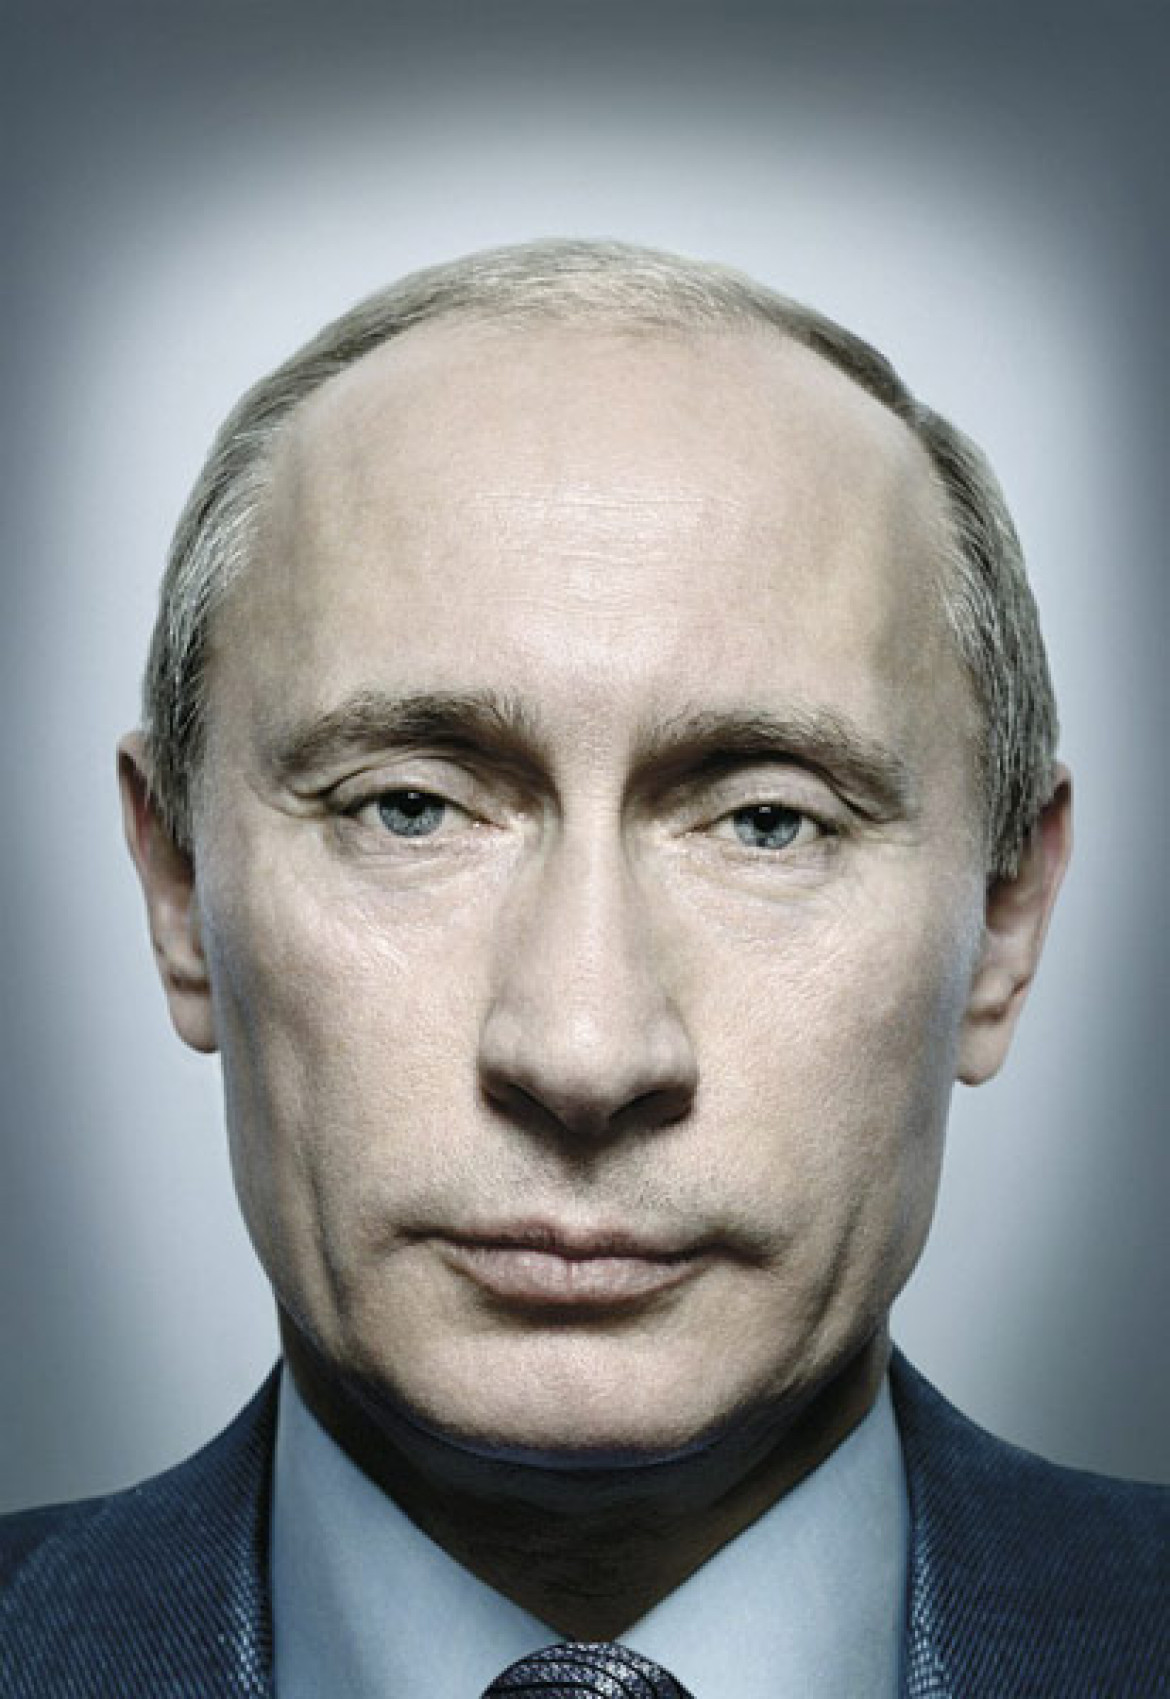 I nagroda w kategorii ''Portret - pojedyncze zdjęcie''. Fot. Platon, Wielka Brytania, magazyn Time. Prezydent Rosji Wladimir Putin.